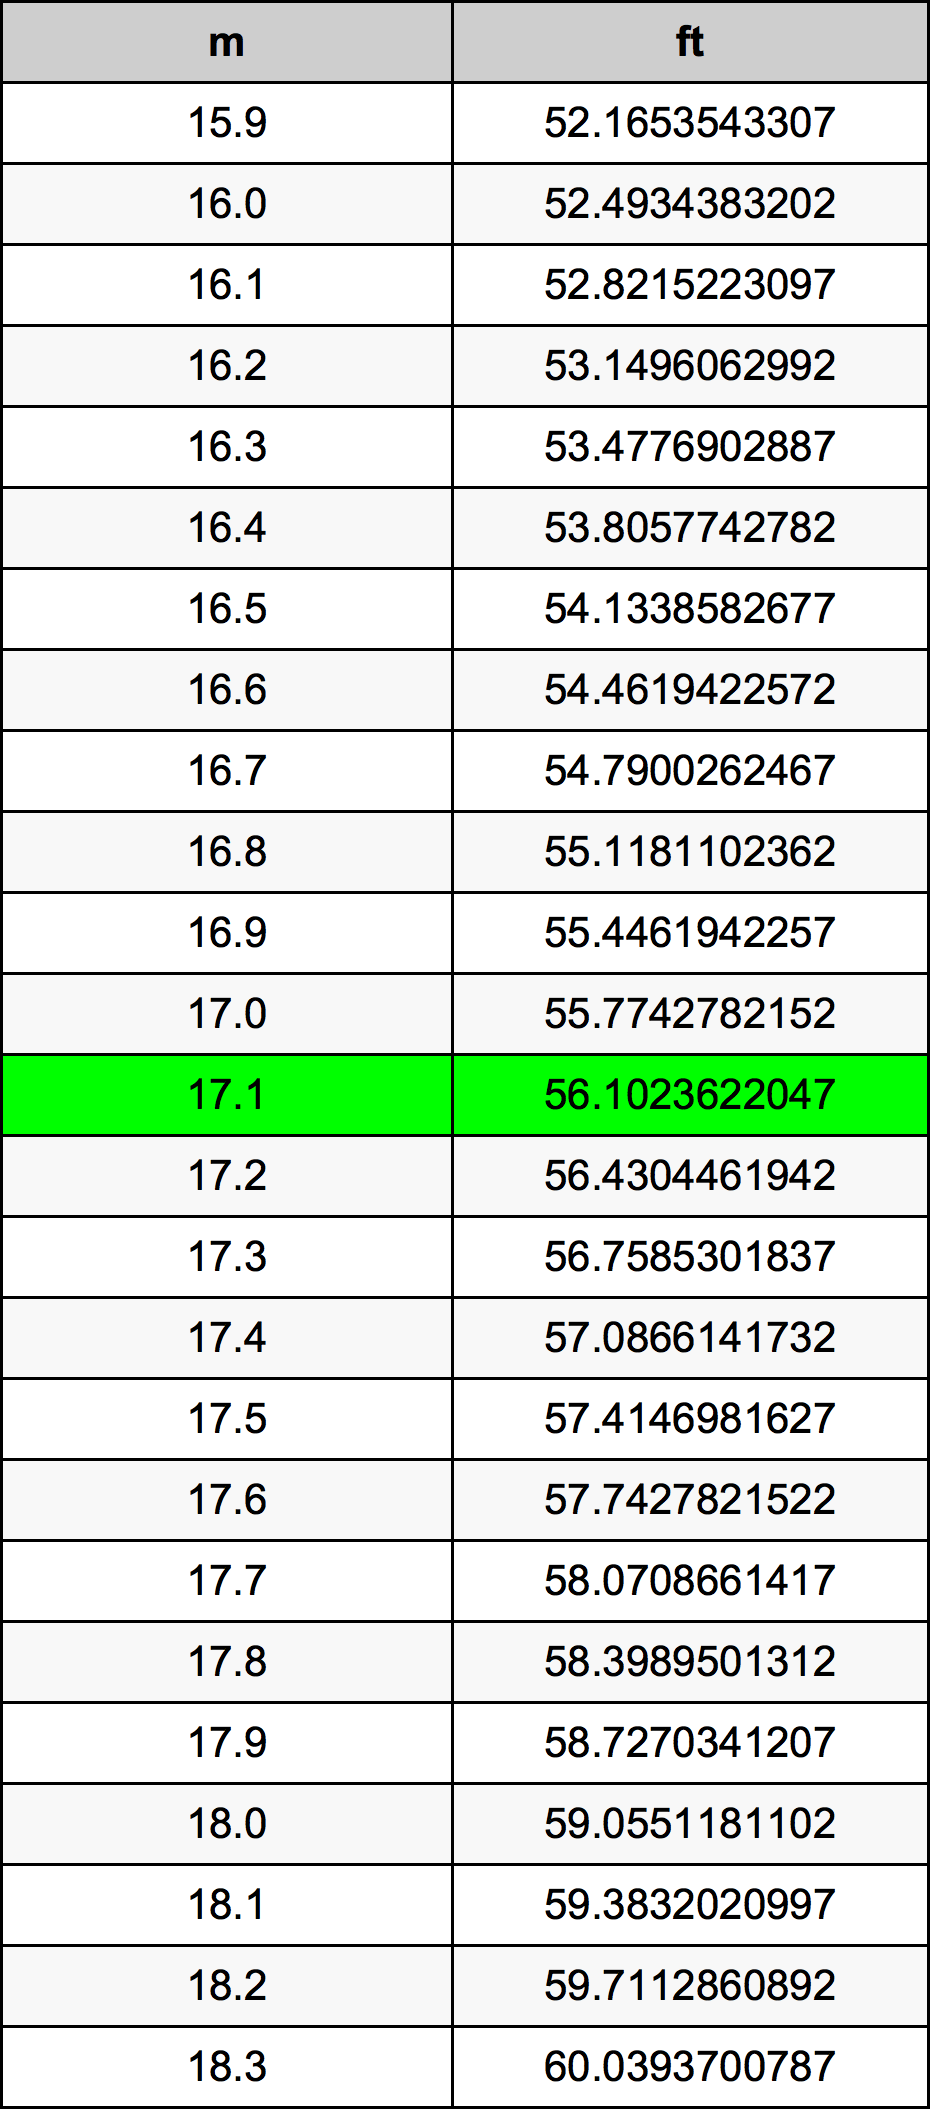 17.1 Metru tabelul de conversie